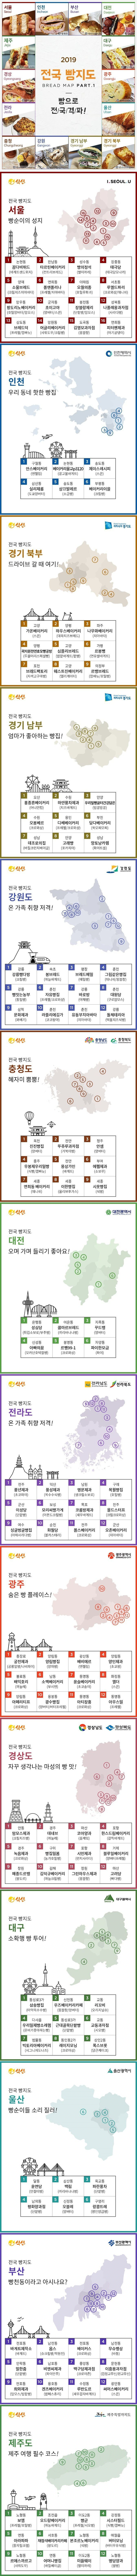 2019 전국 빵지도.jpg